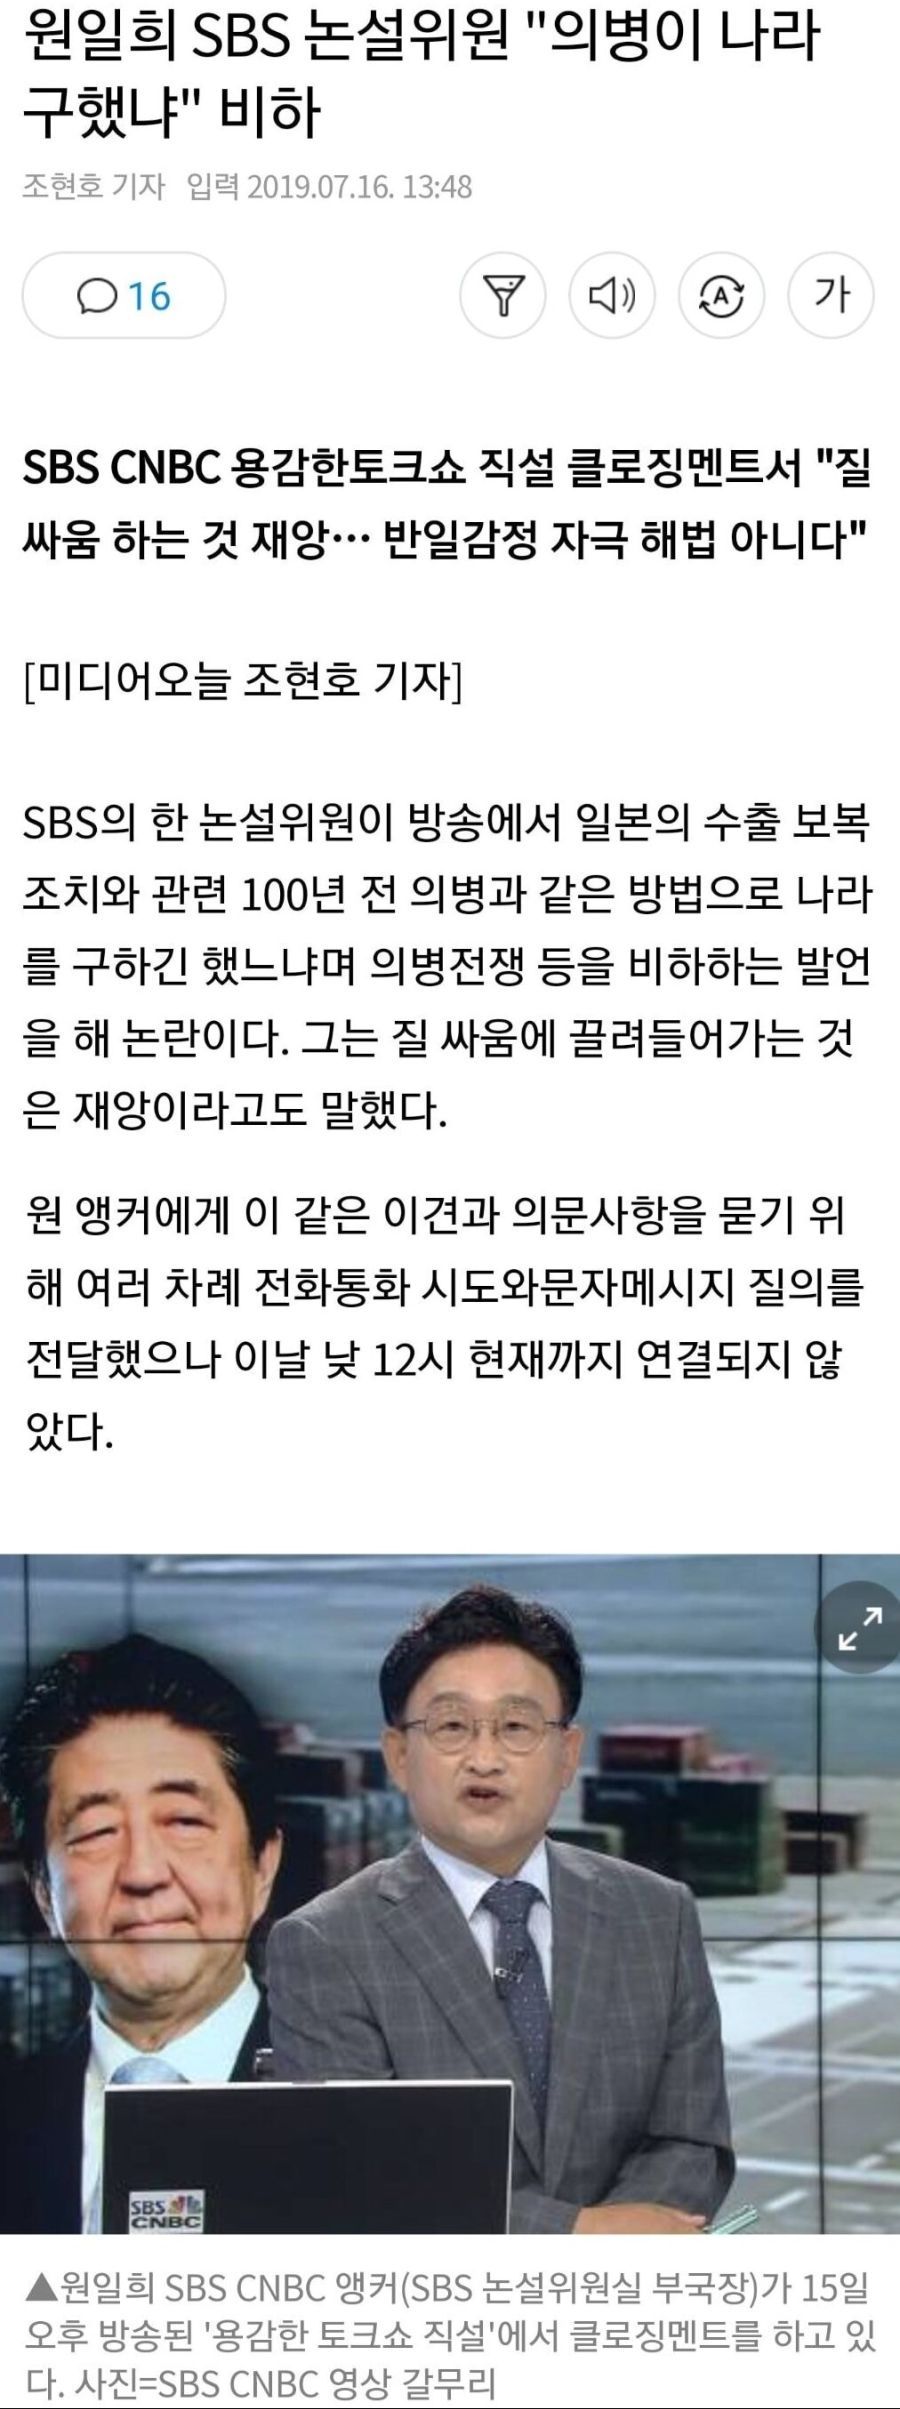 원일희 SBS 논설위원 "의병이 나라 구했냐" 비하